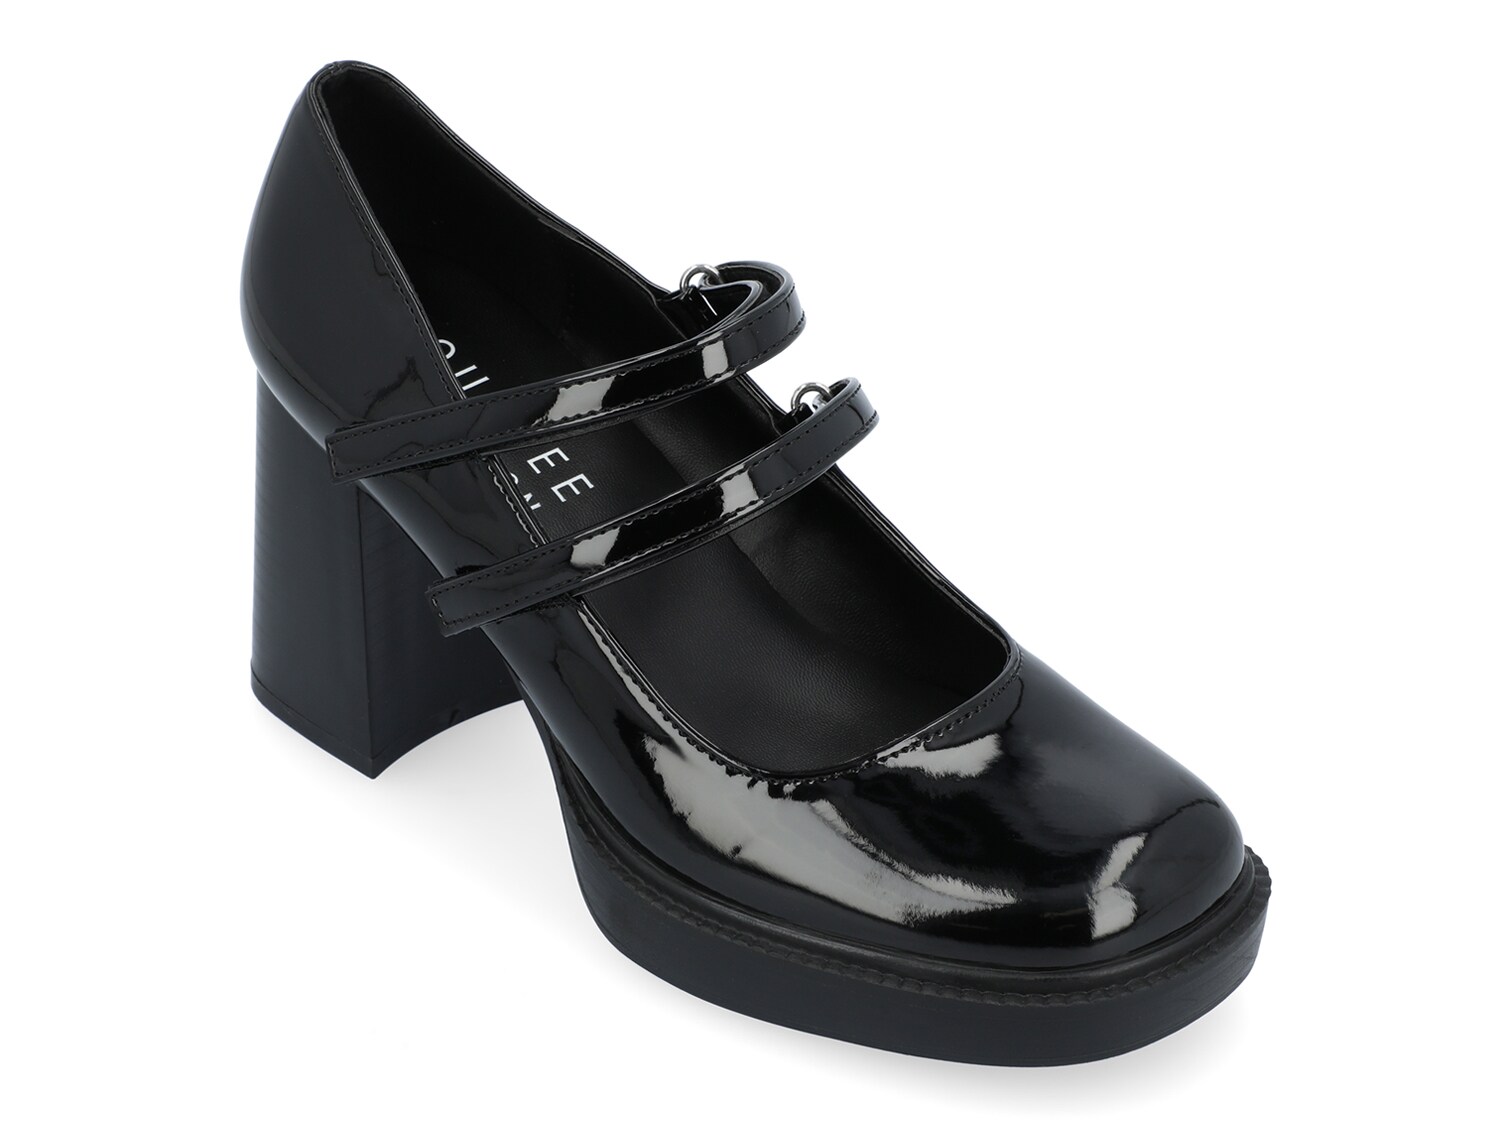 Туфли на платформе Journee Collection Shasta, черный женские туфли в стиле лолита туфли мэри джейн с бантом на платформе кожаные туфли на плоской подошве с квадратным носком повседневные т